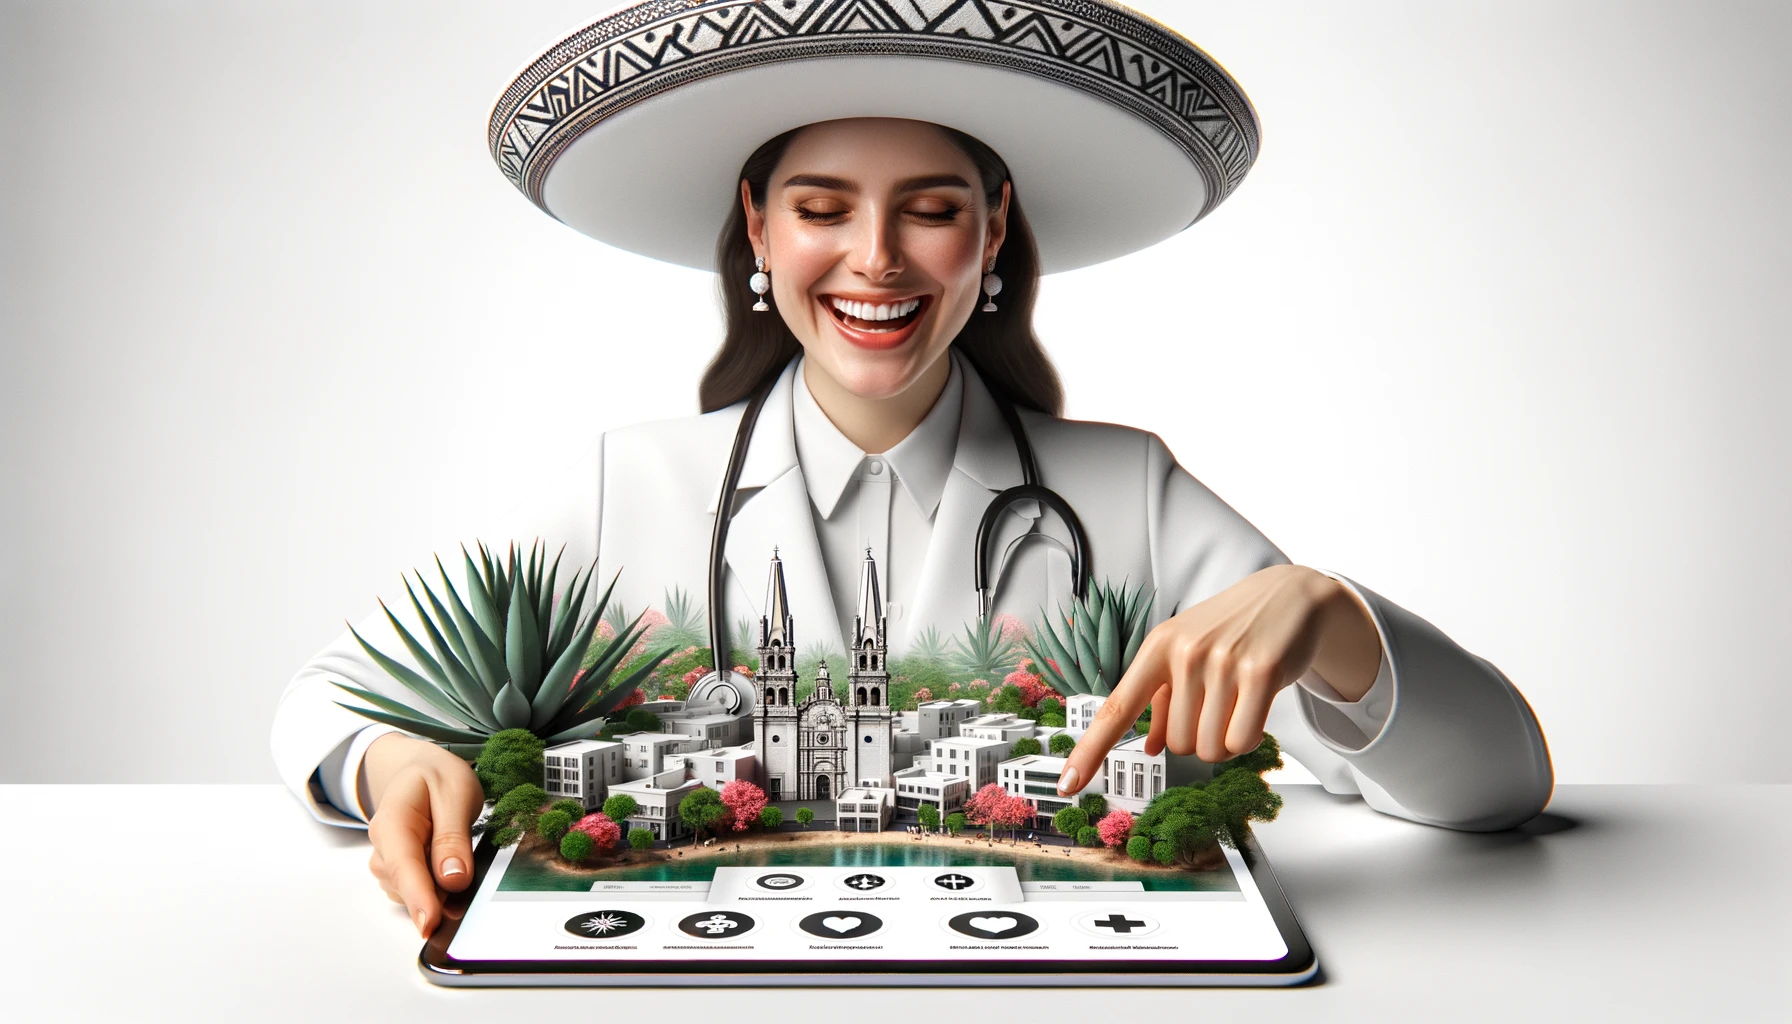 Dentista sonriente satisfecho con su nueva página web creada por Miespecialista.com en Guadalajara, México